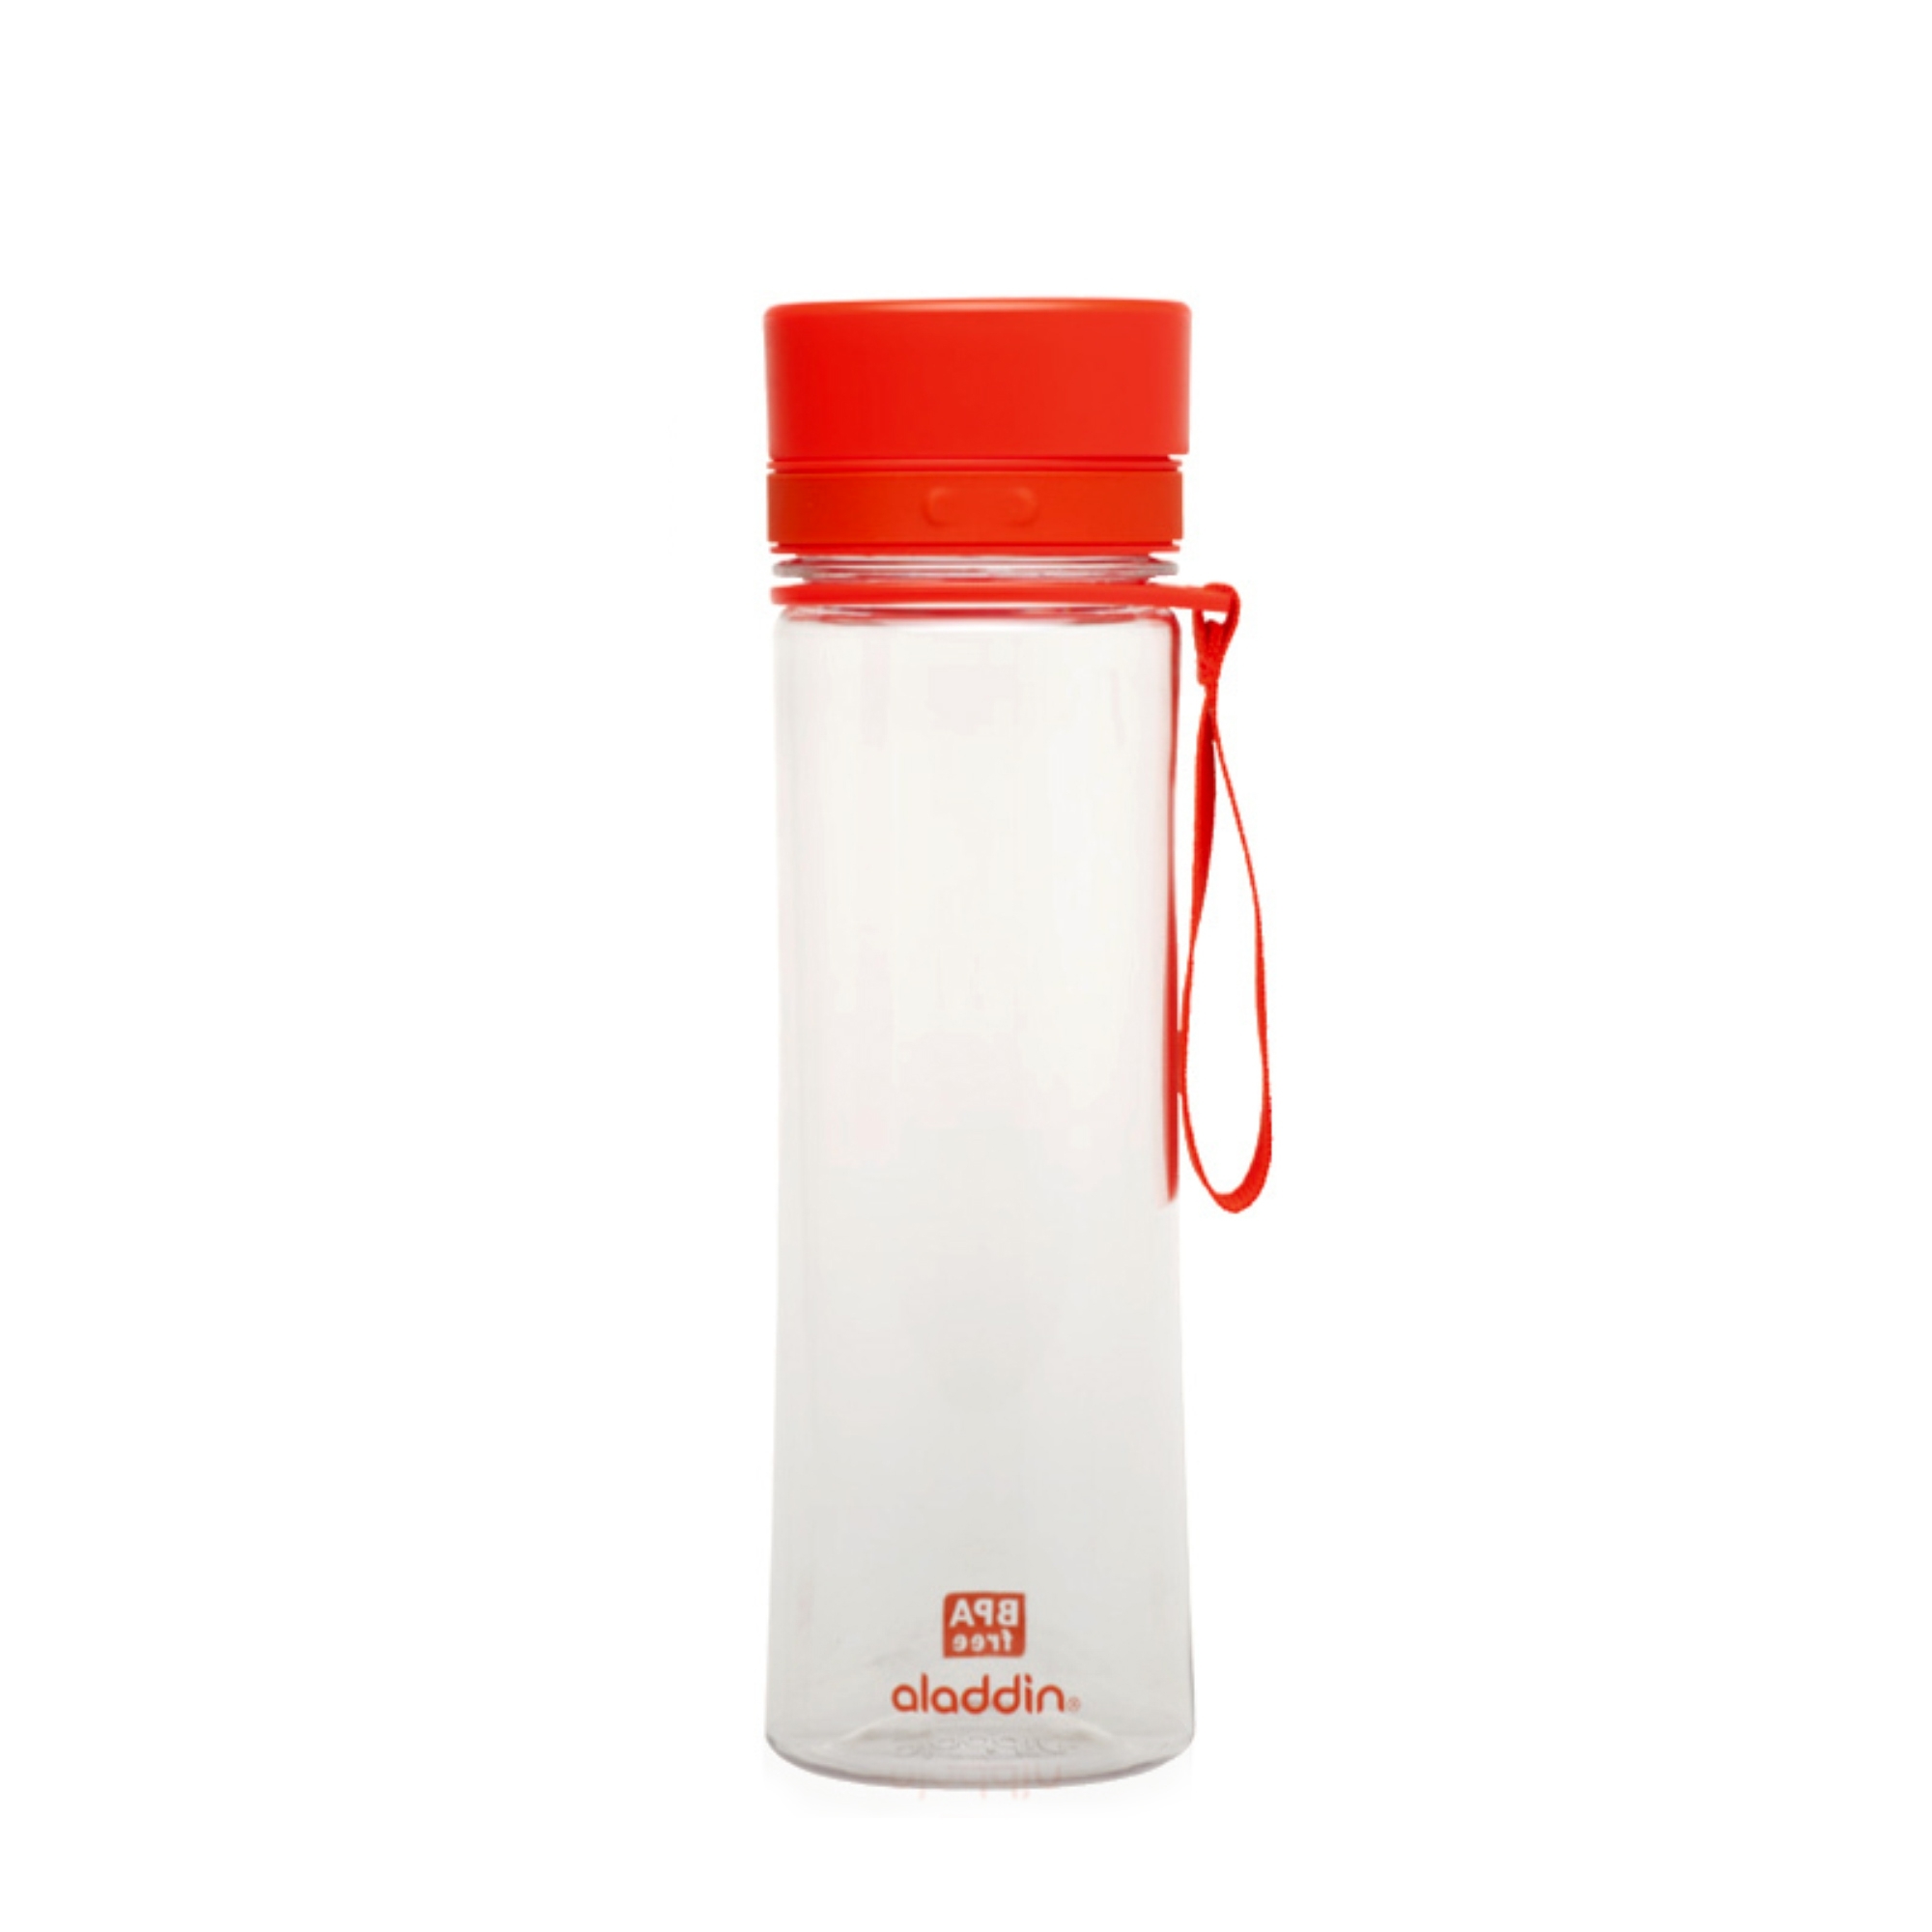 aladdin - water bottle - 0,6 liter